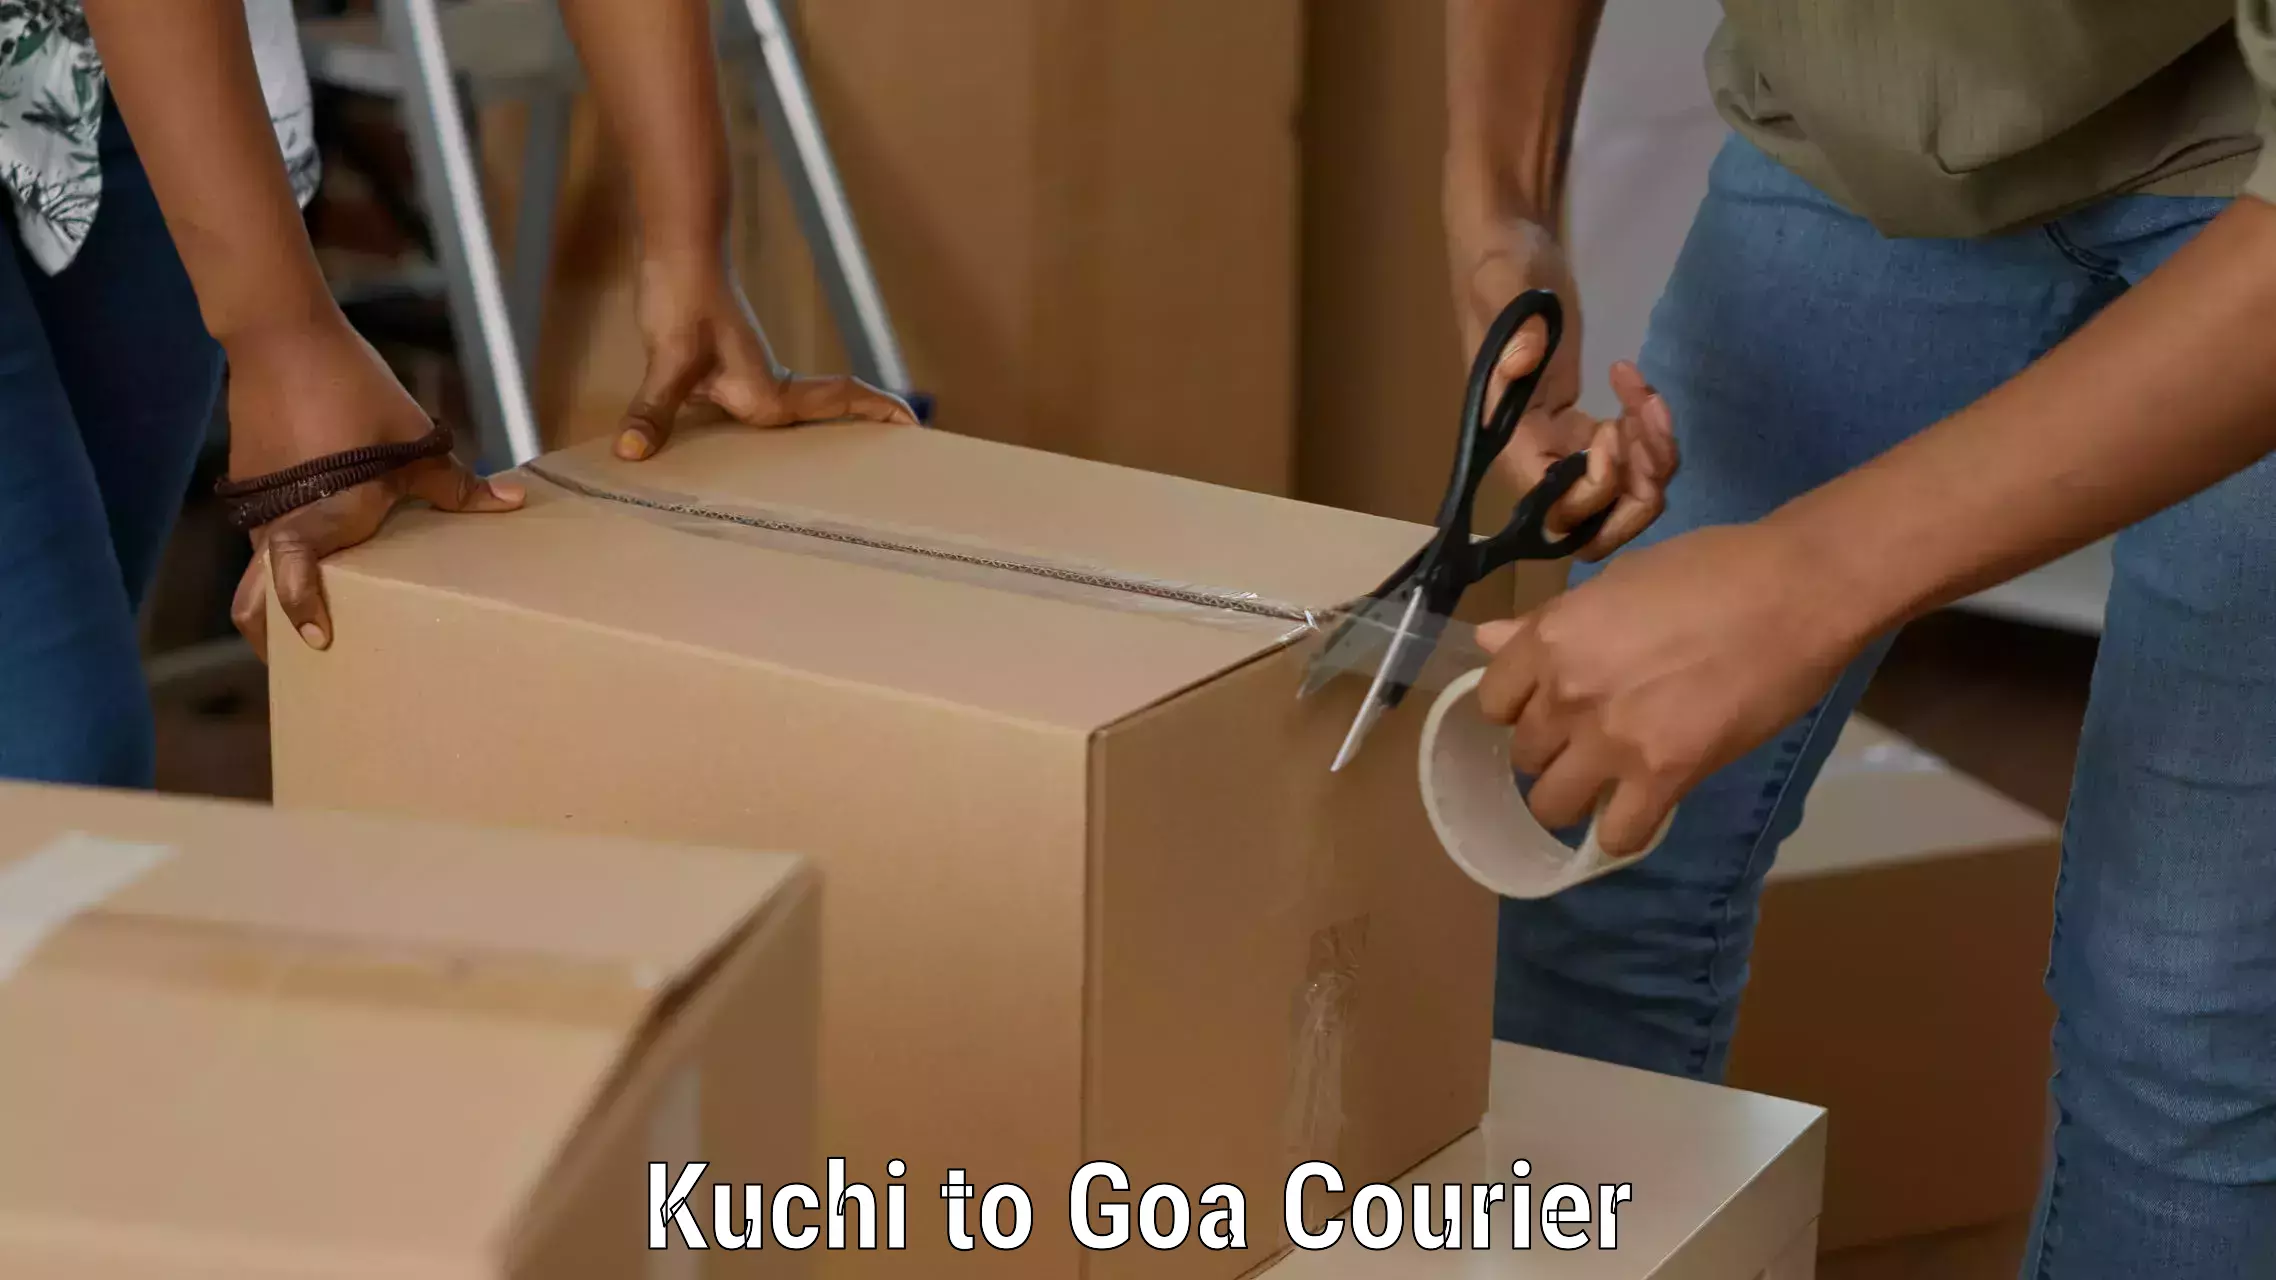 Efficient parcel service Kuchi to Goa